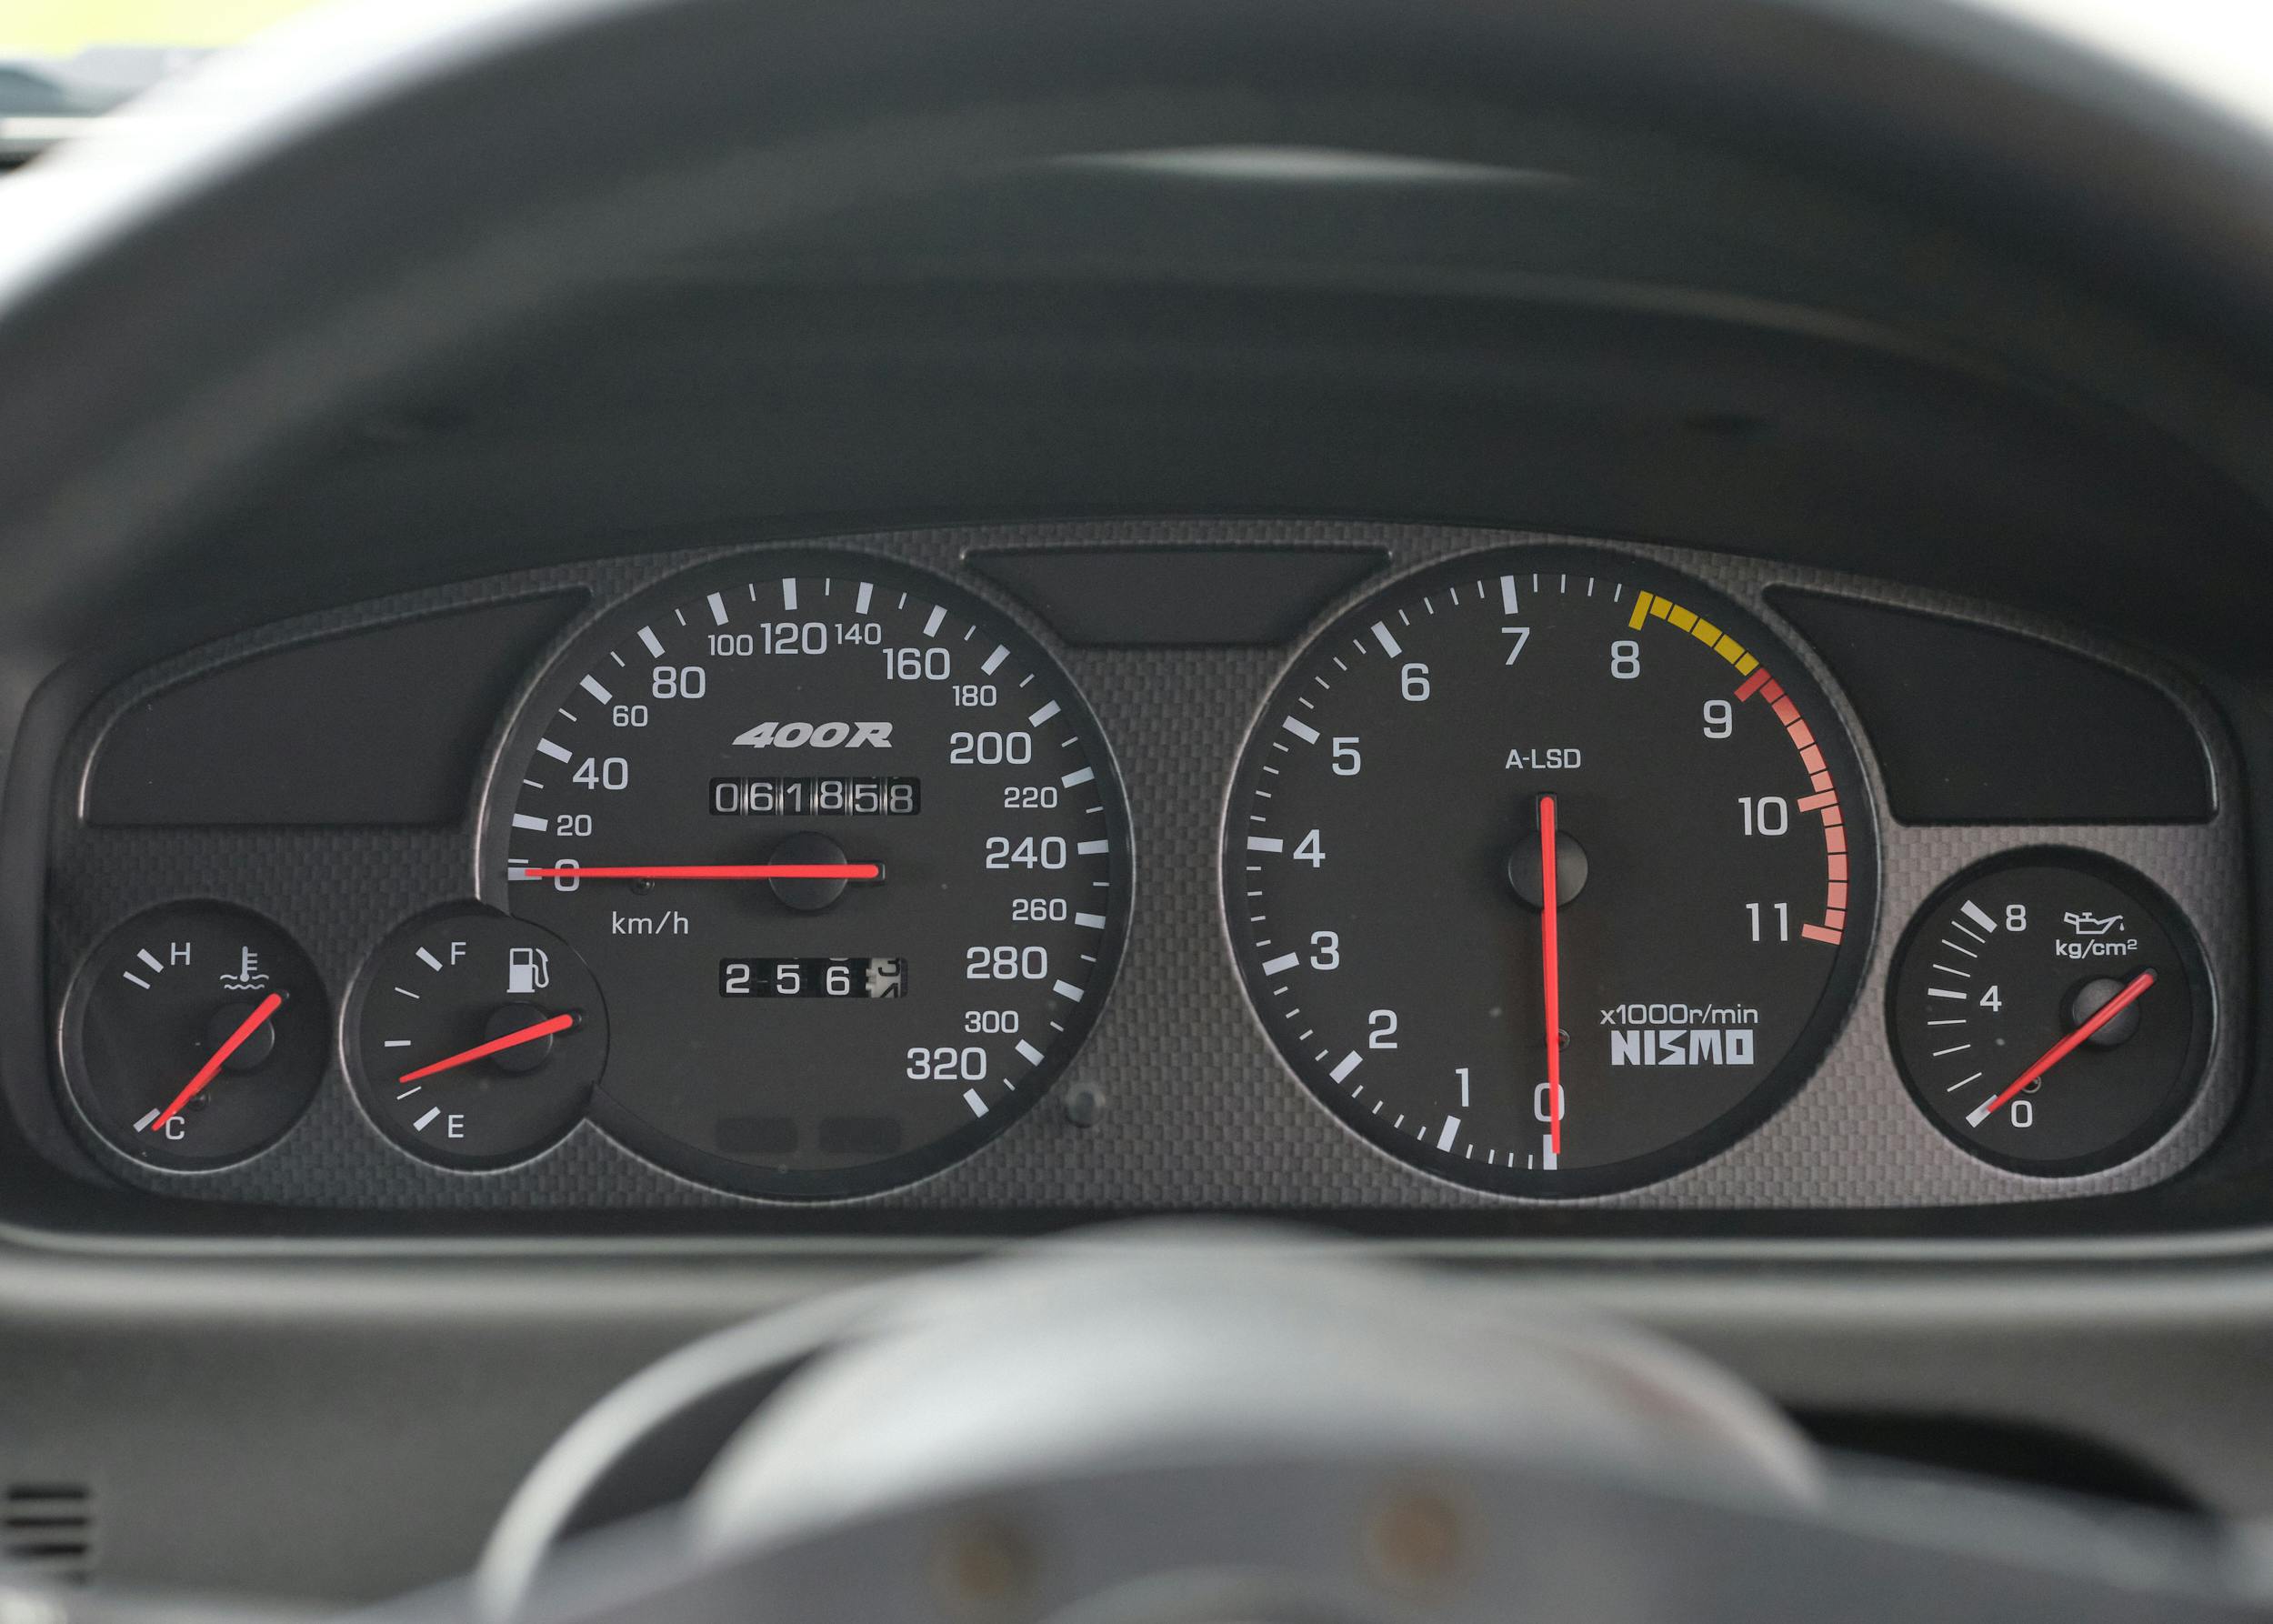 1996 Nissan Skyline R33 GT-R NISMO 400R interior dash gauges